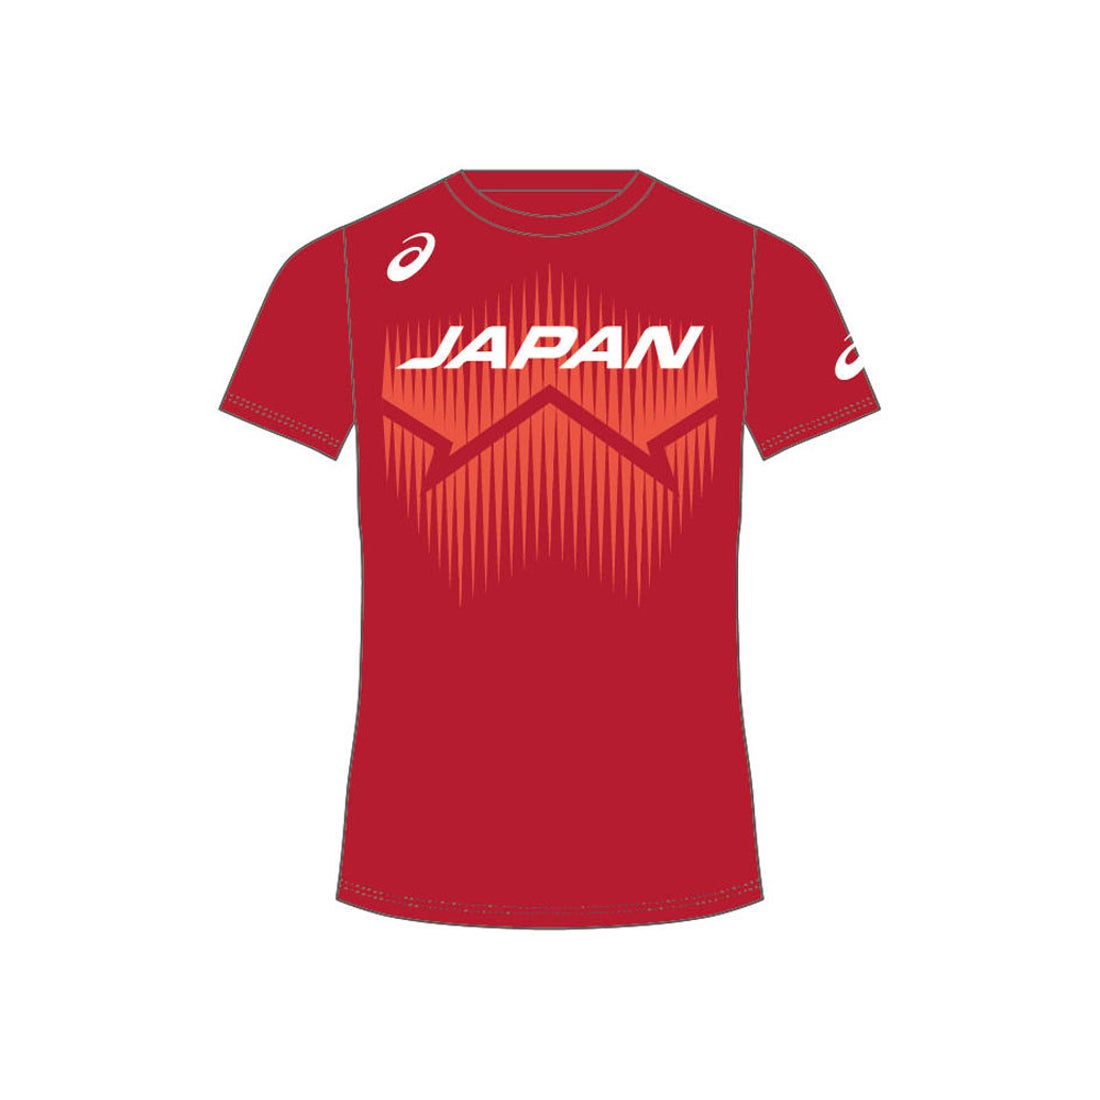 日本代表 バレーボール Tシャツ 応援ユニフォーム - ウェア